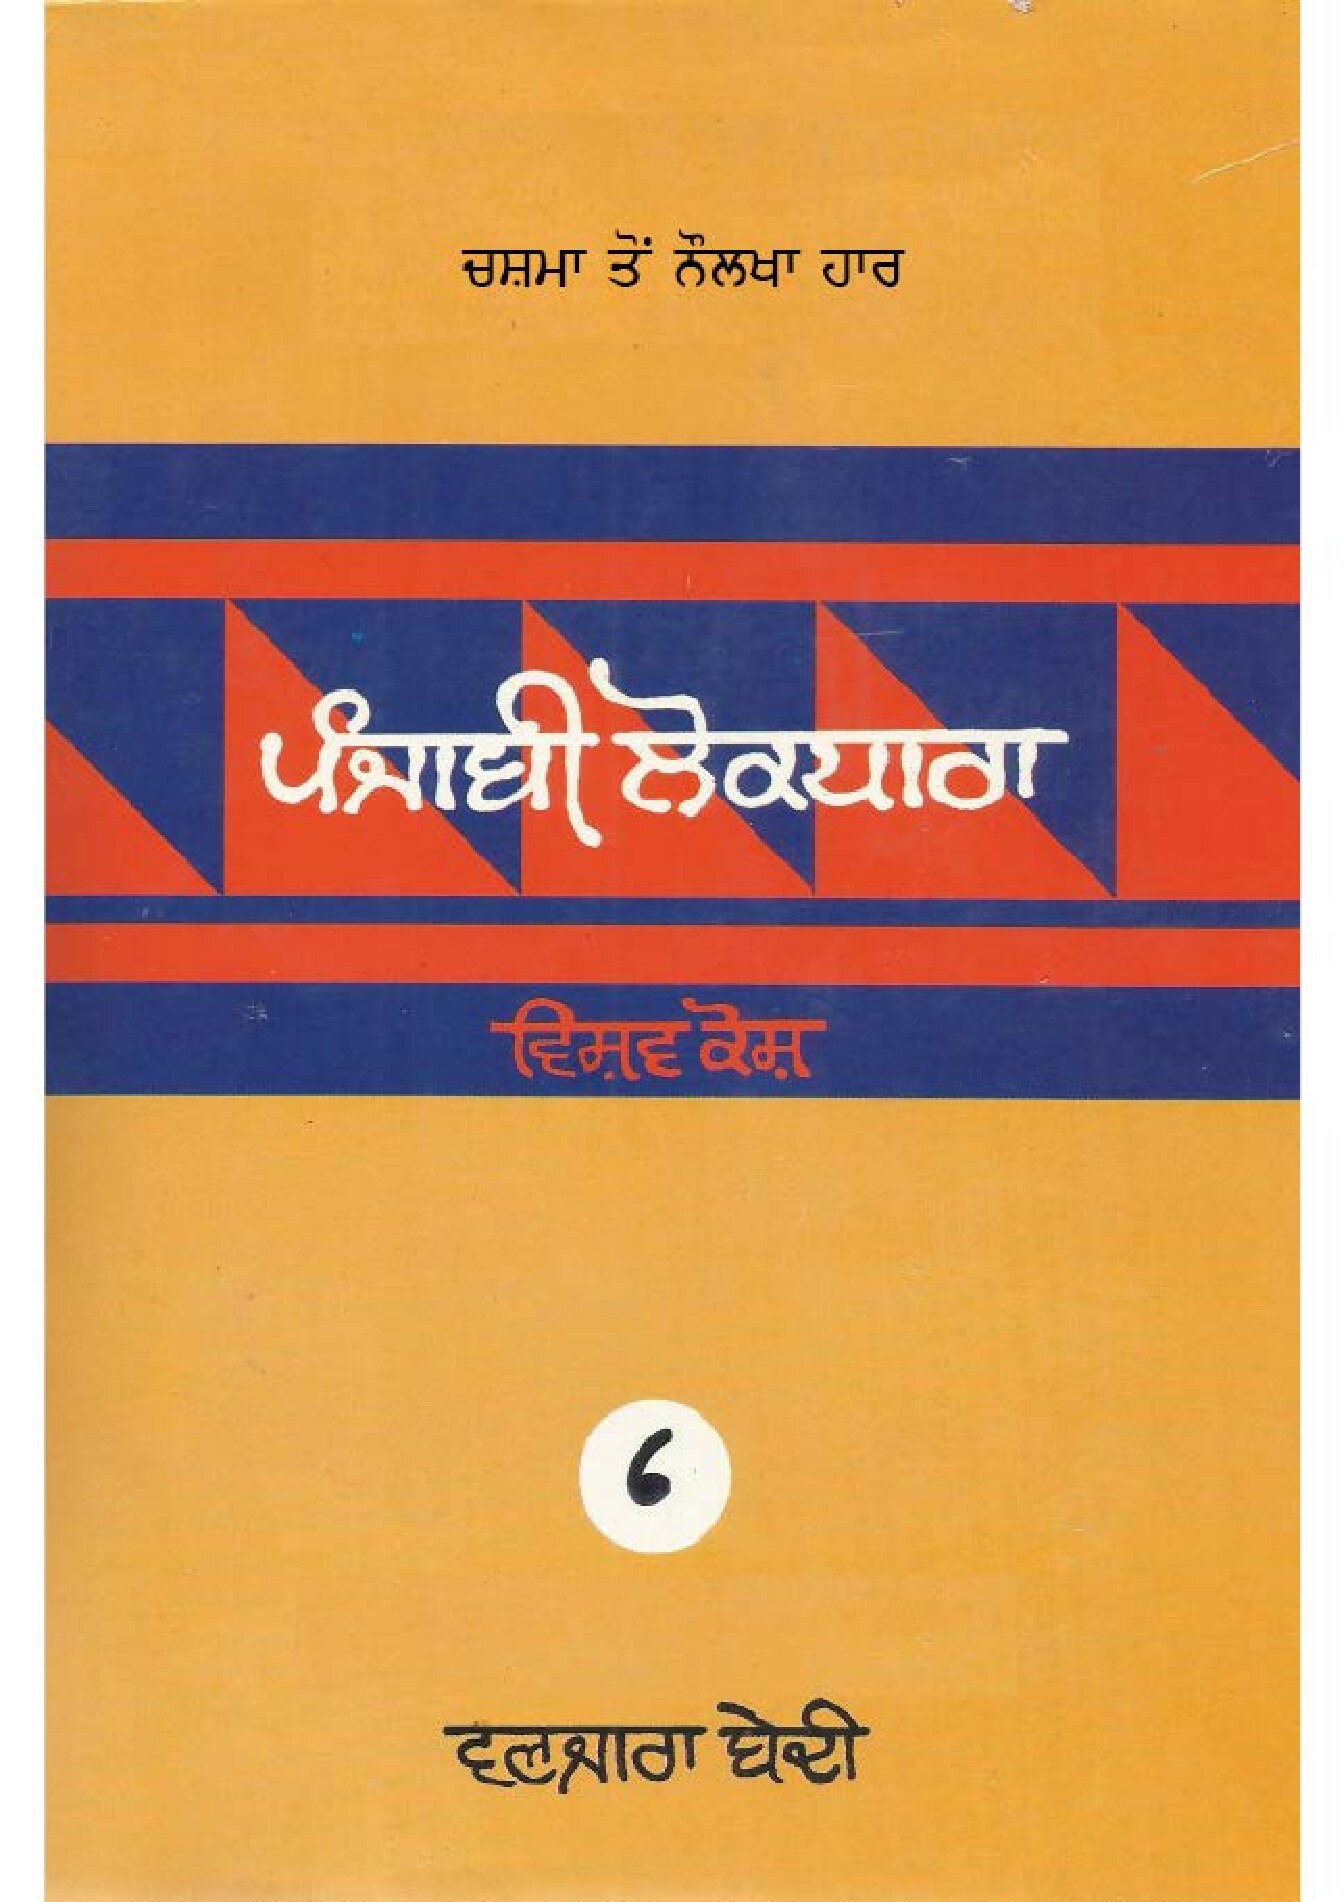 ਪੰਜਾਬੀ ਲੋਕ ਧਾਰਾ - ਵਿਸ਼ਵ ਕੋਸ਼(6) - Punjabi Lok Dhara - Vishav Kosh(6)